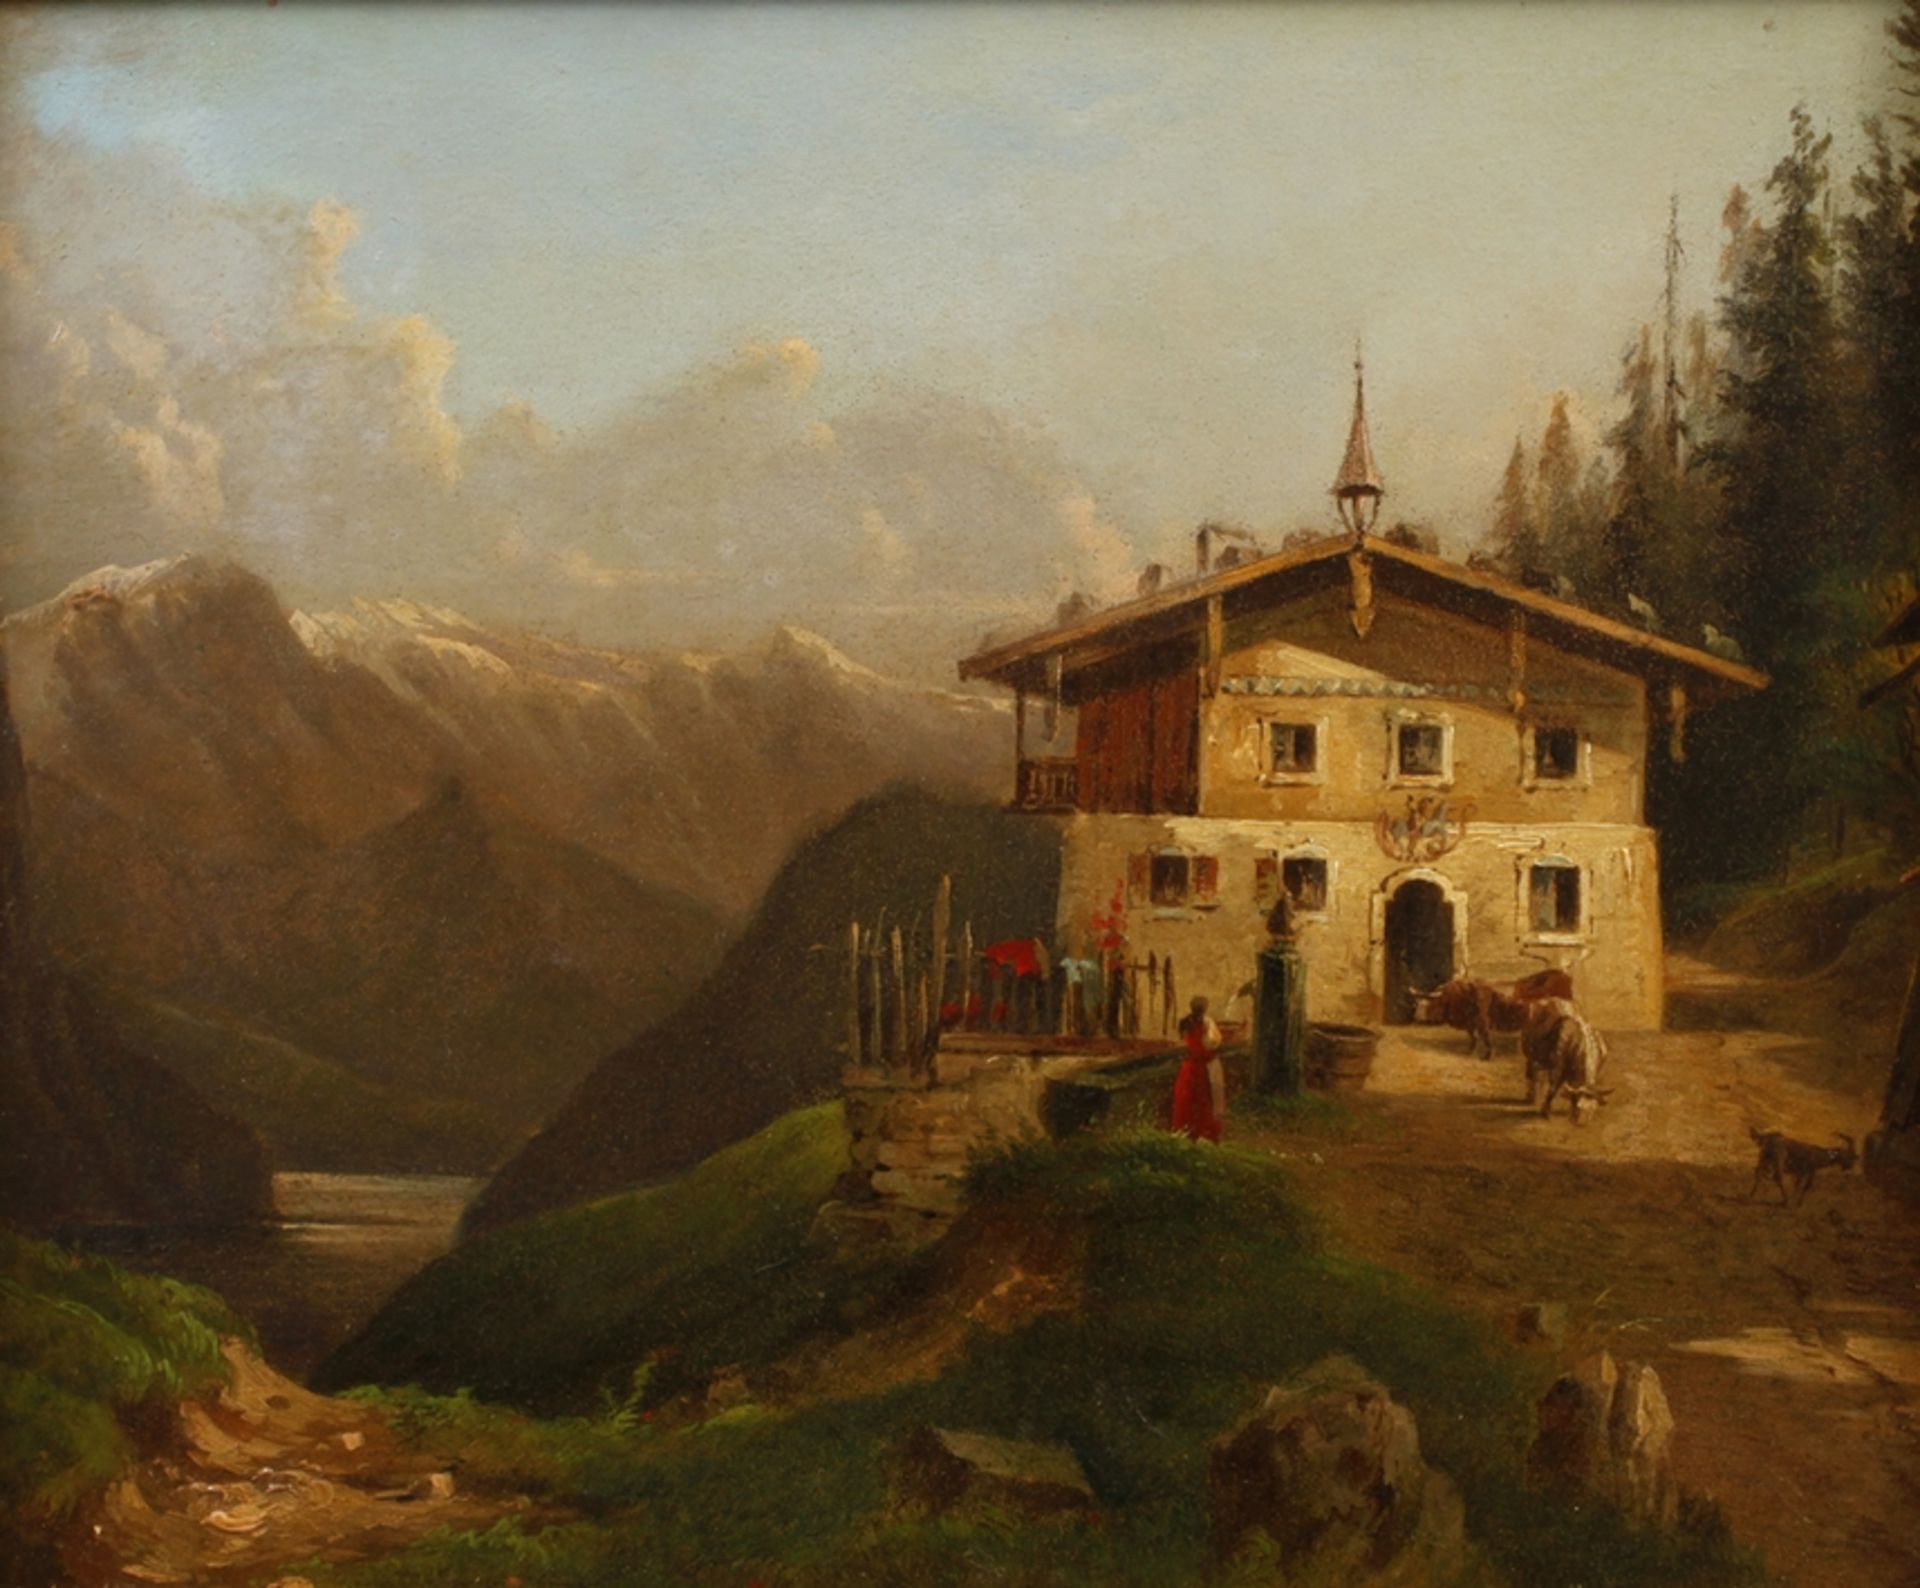 Tiroler Bauernhof einsames Bauernhaus in den Bergen, vor der imposanten Kulisse der teils